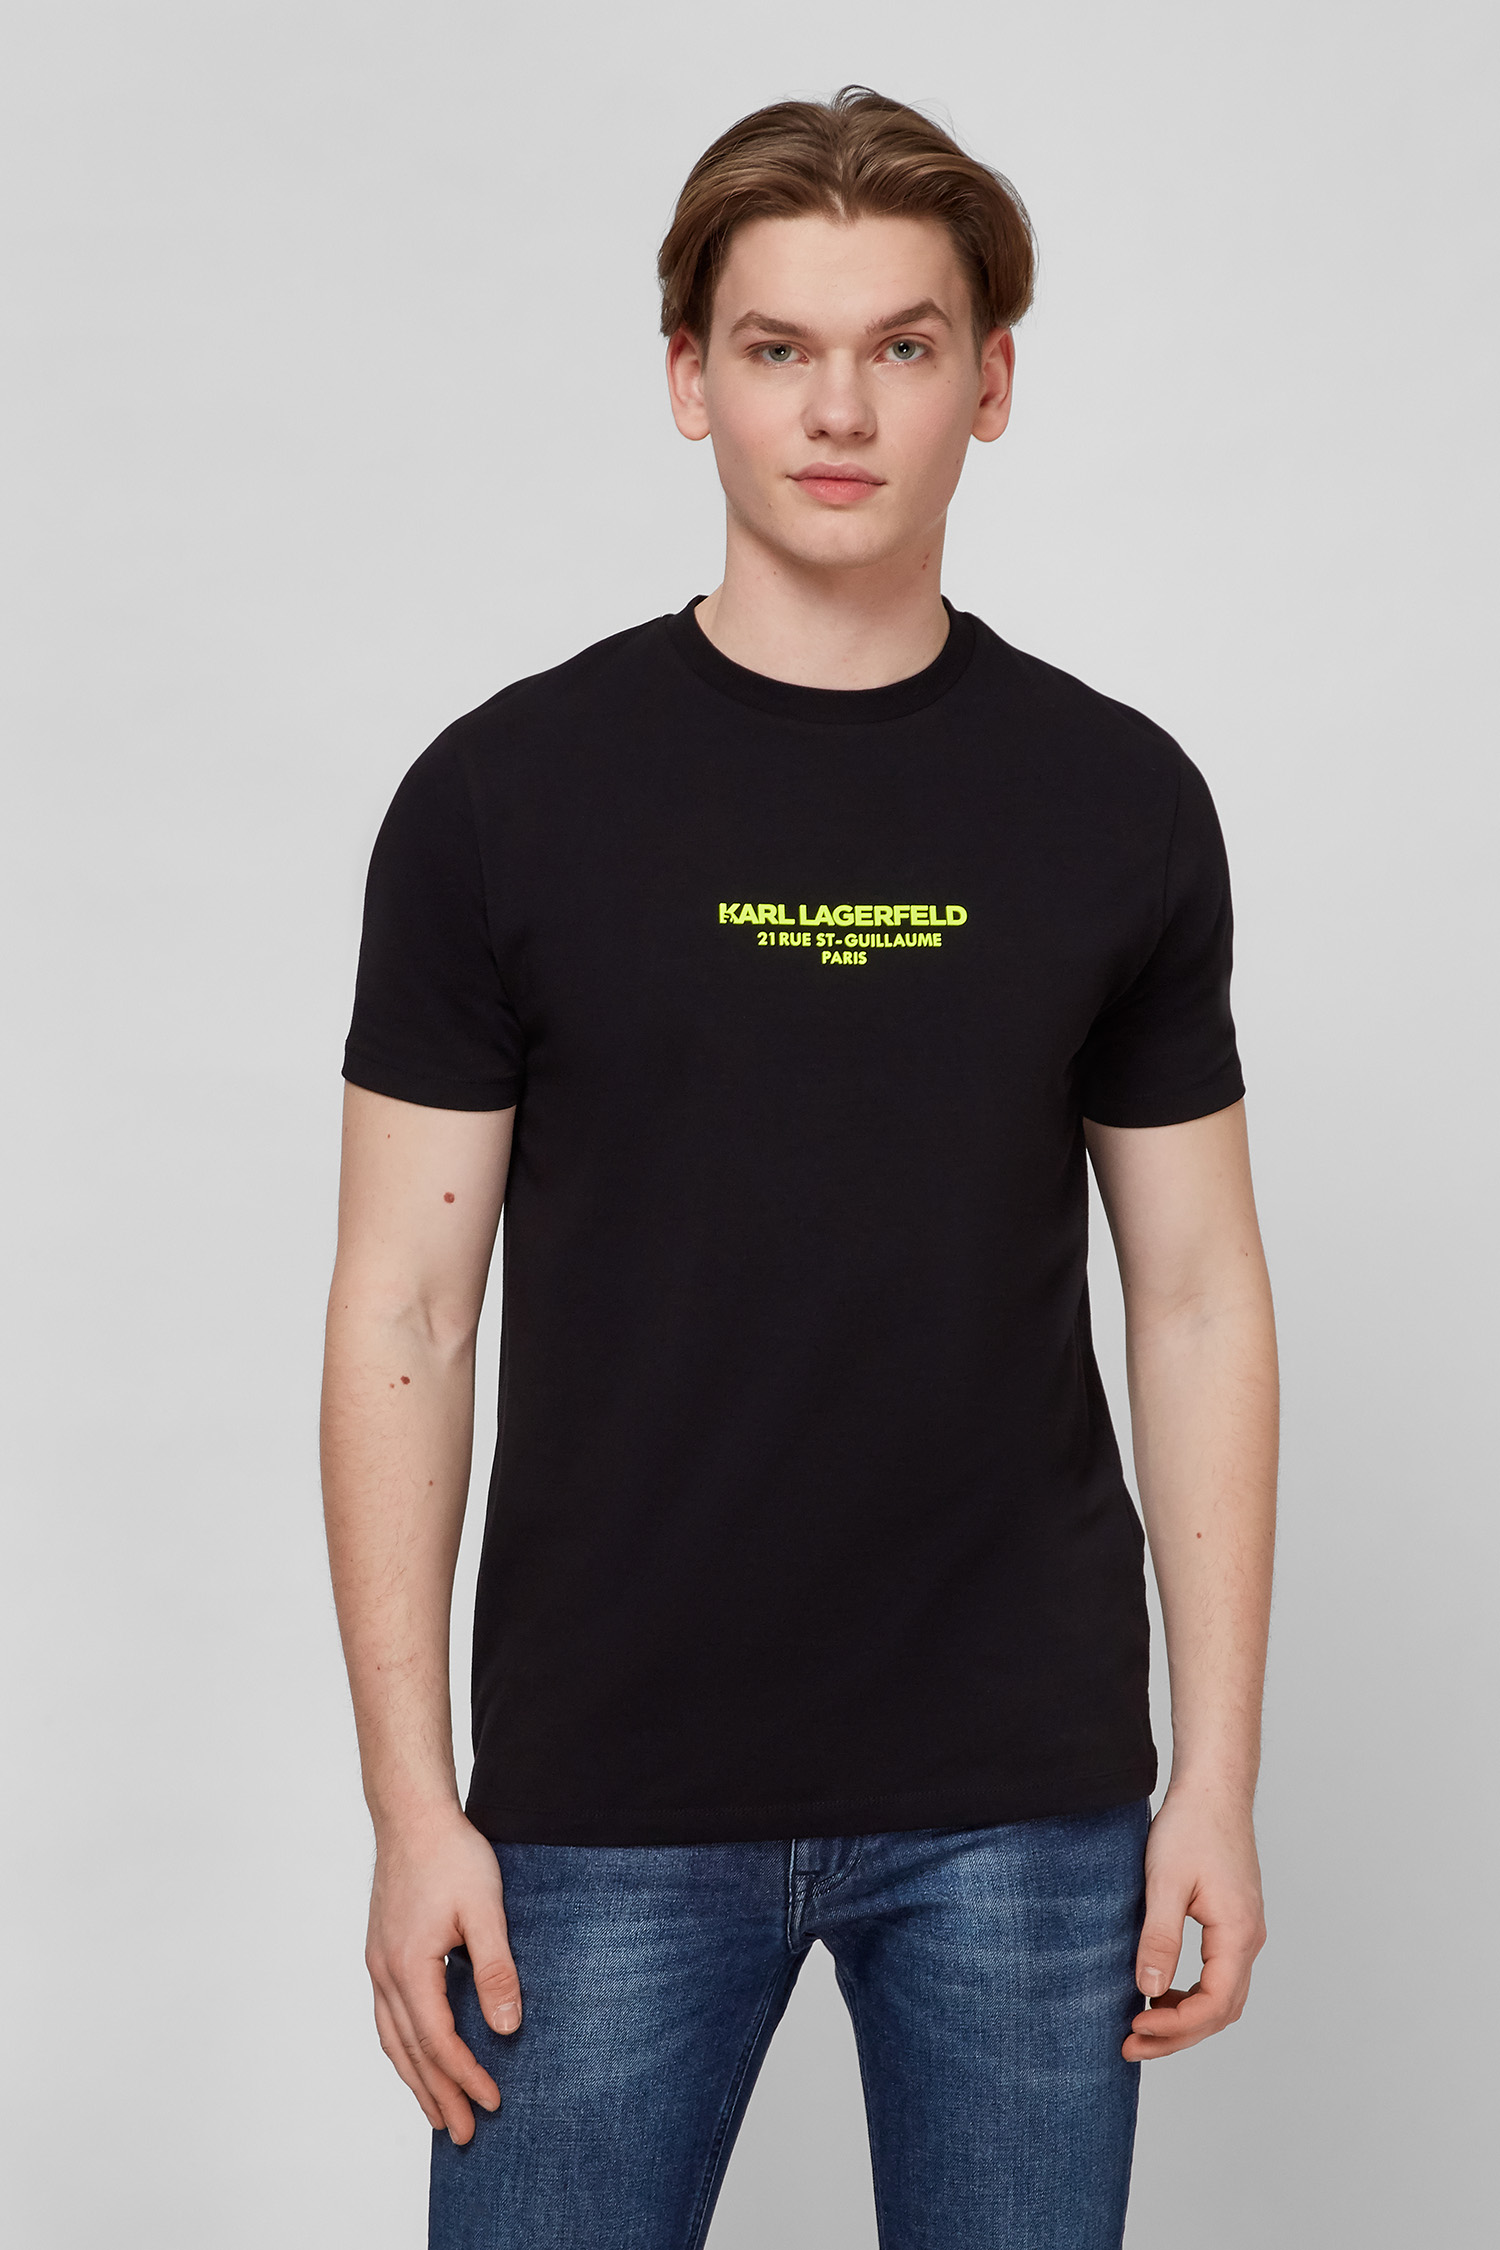 Чорна футболка для хлопців Karl Lagerfeld 521221.755424;990